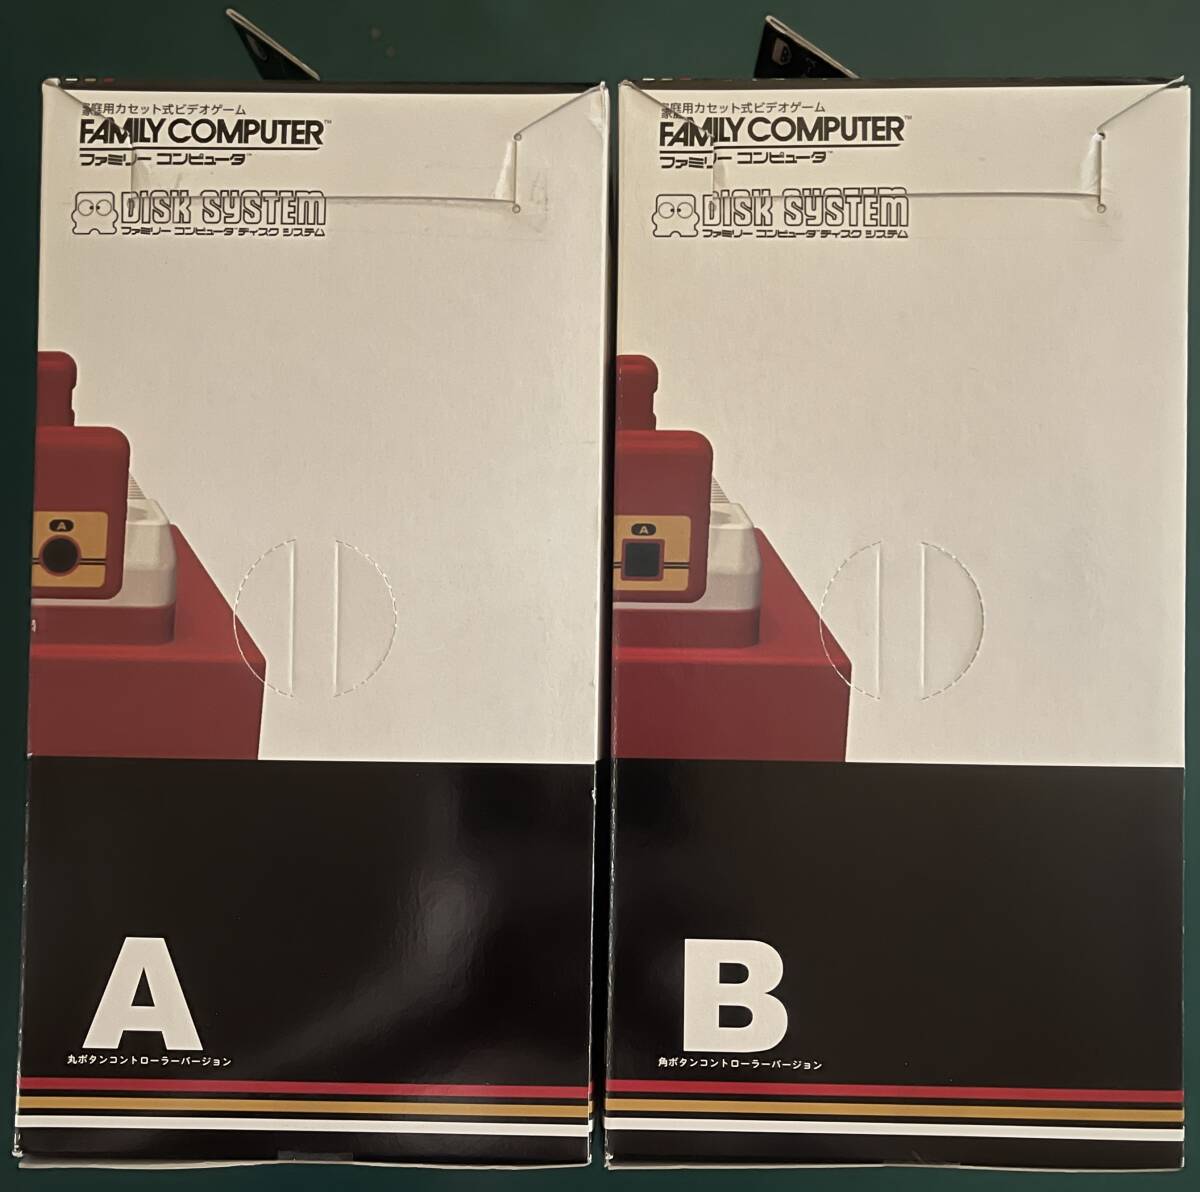 [ новый товар нераспечатанный ]Nintendo Famicom & дисковая система твердый type чехол для салфеток все 2 вид 